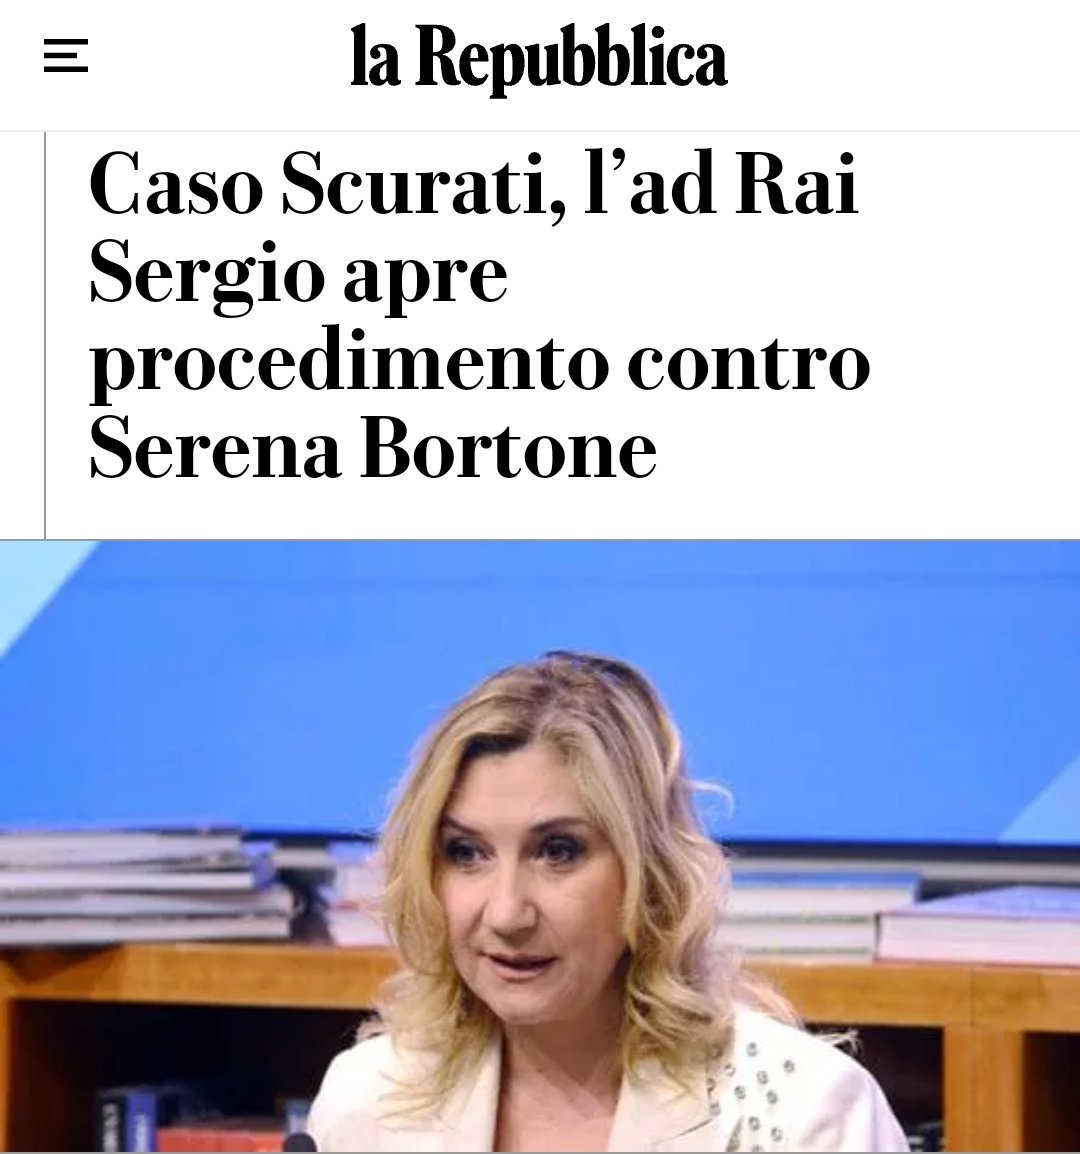 Fascisti infami. #Rai #SerenaBortone #Bortone